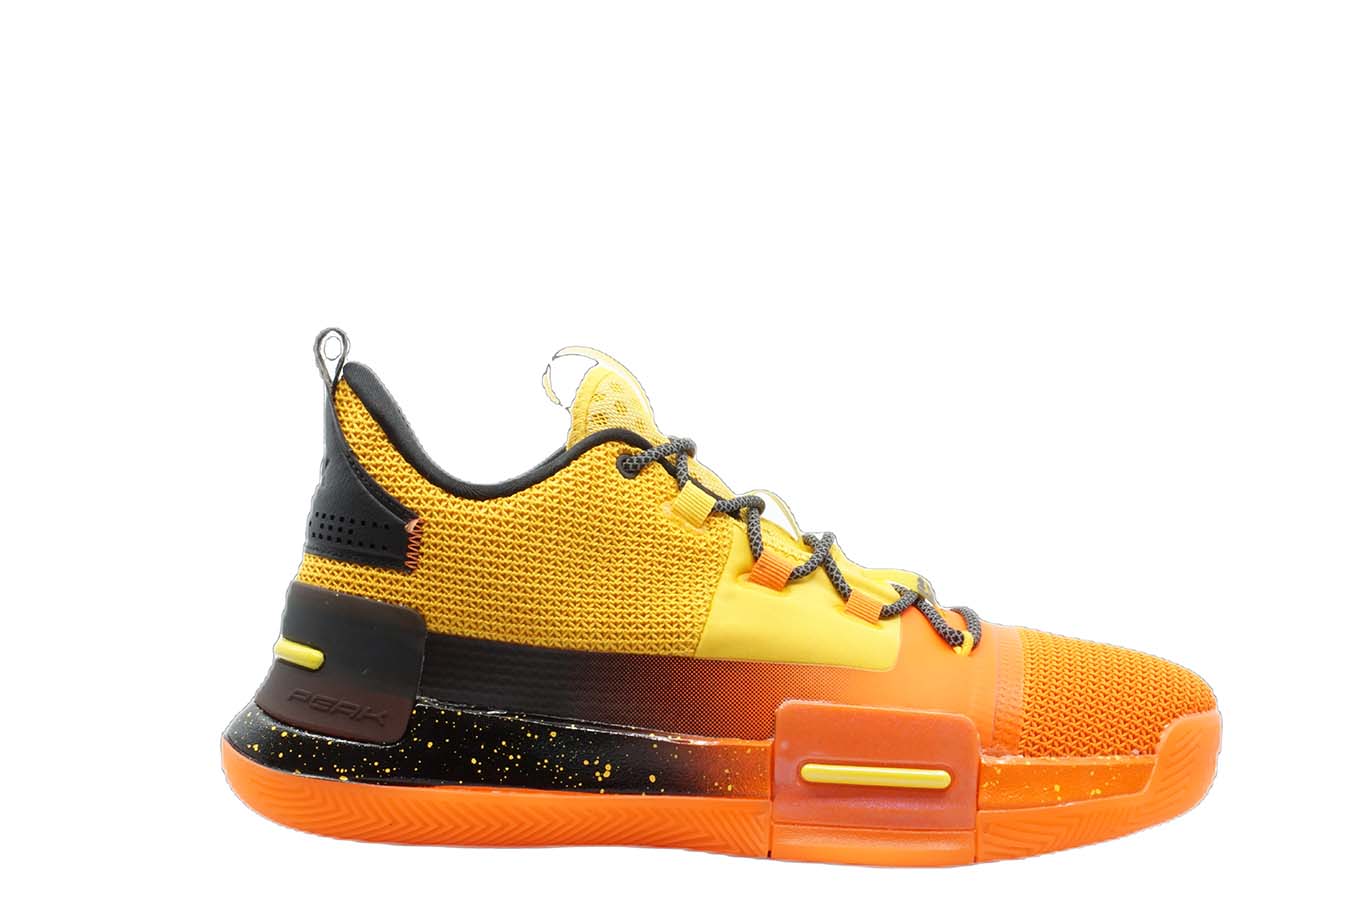 [E94451] Mens Peak Taichi Flash Lou Williams Team Orange Basketball Shoes - 10 - image 1 of 74